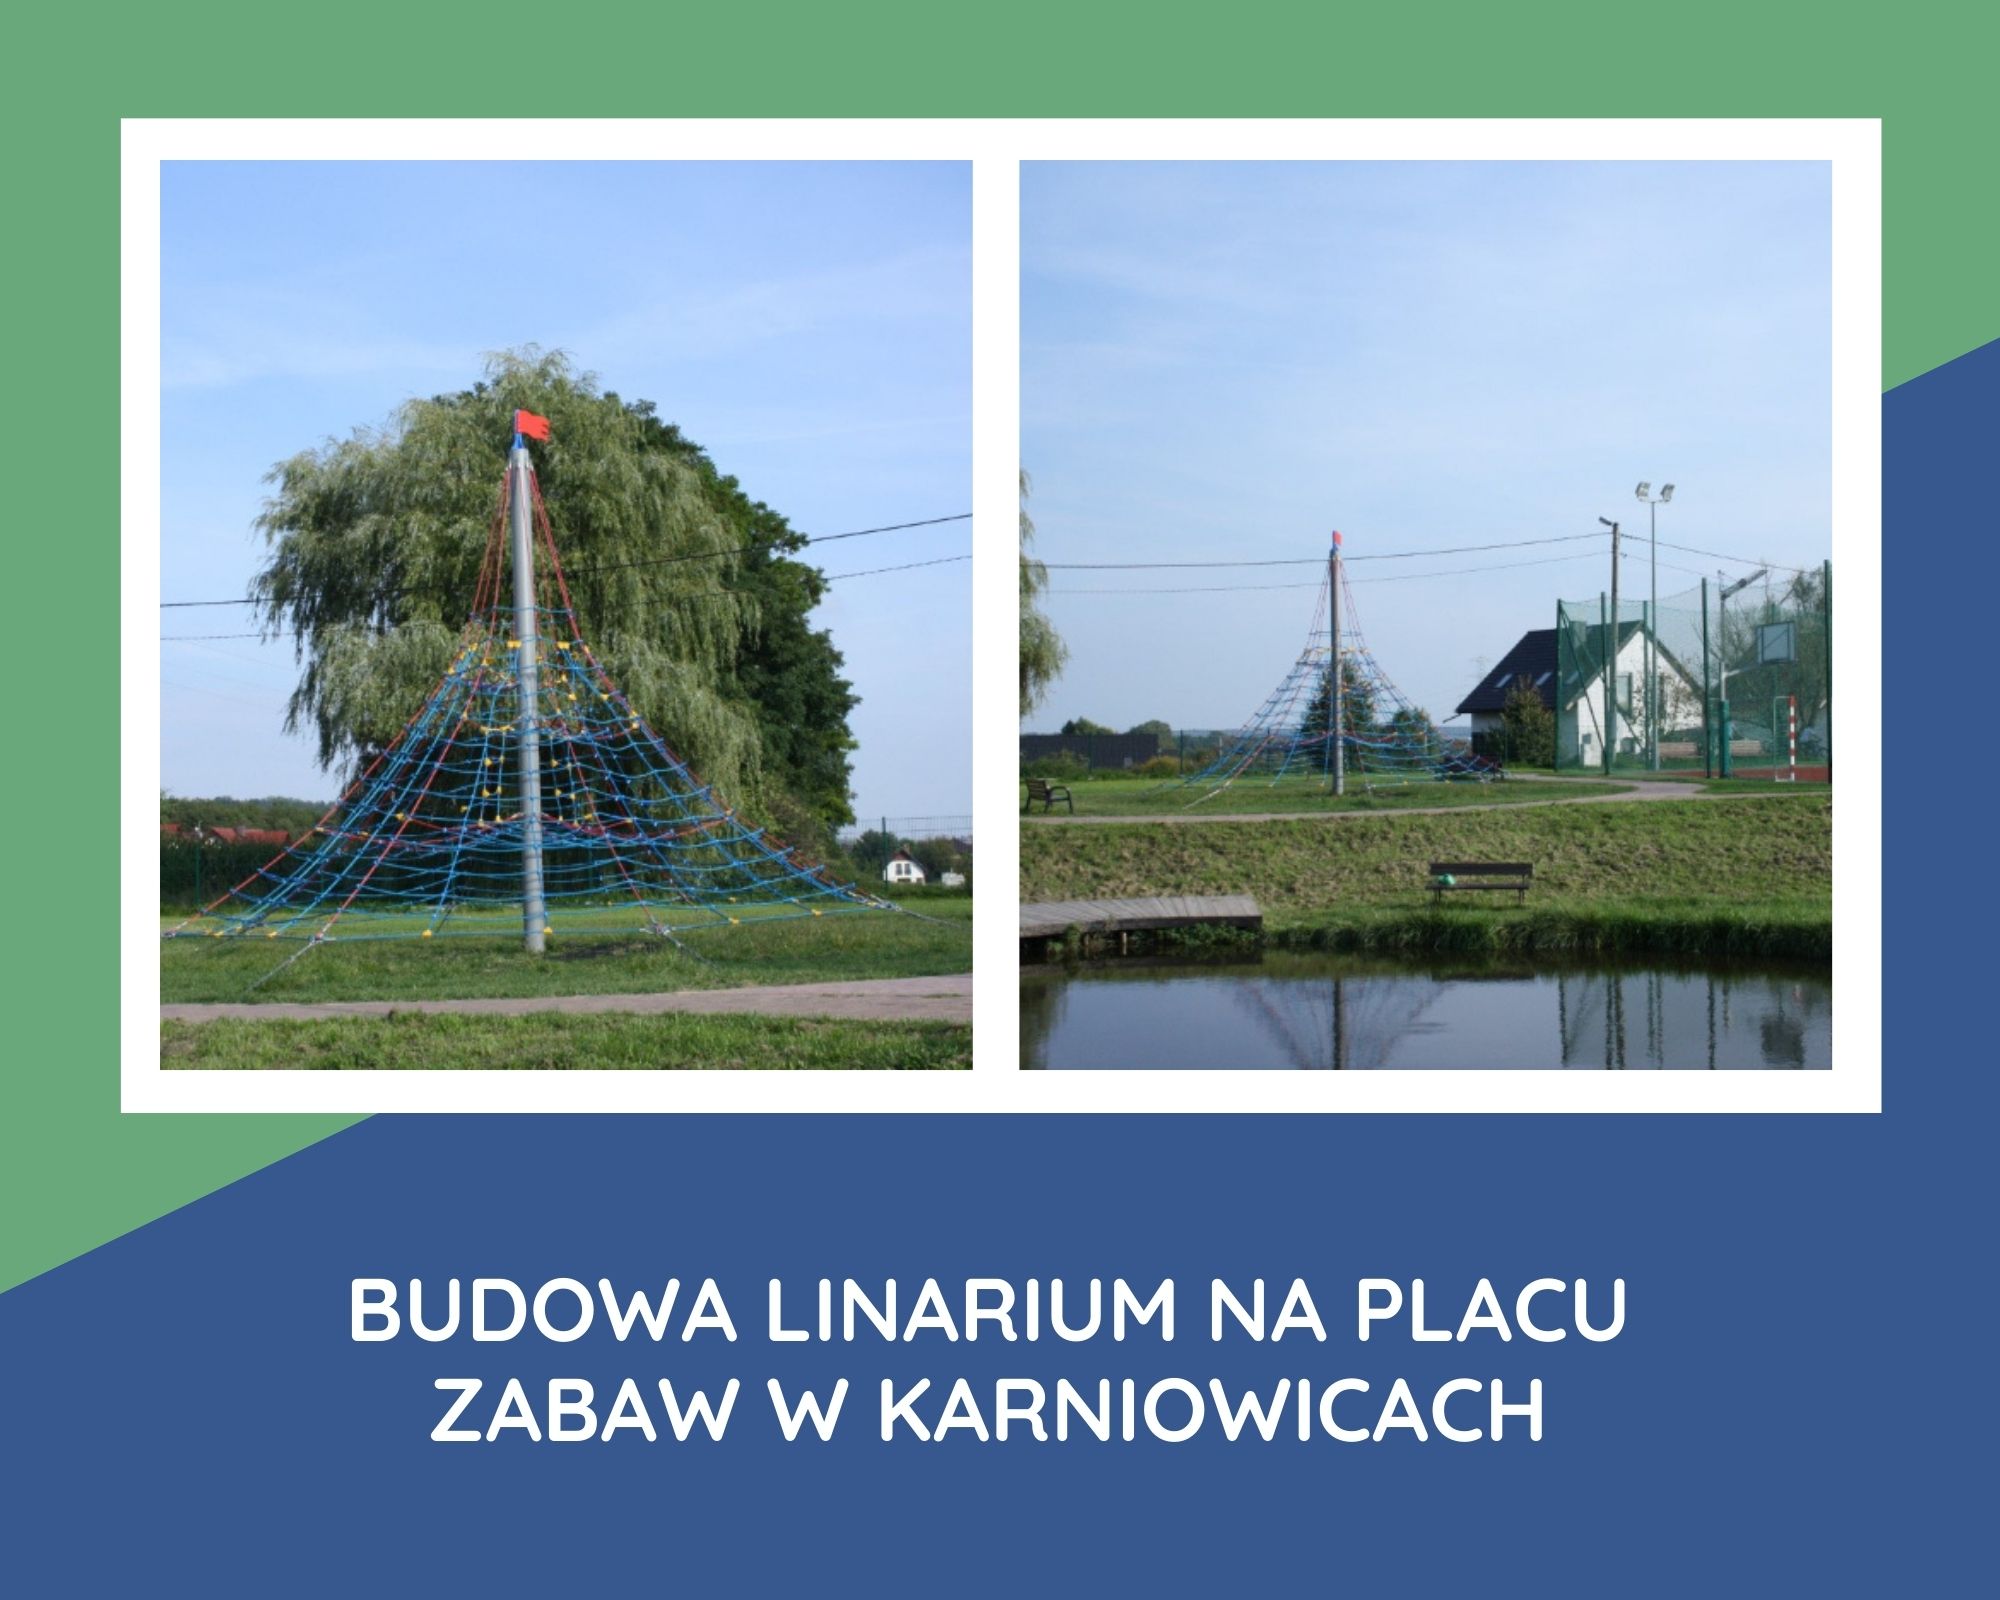 budowa linarium na placu zabaw w karniowicach1